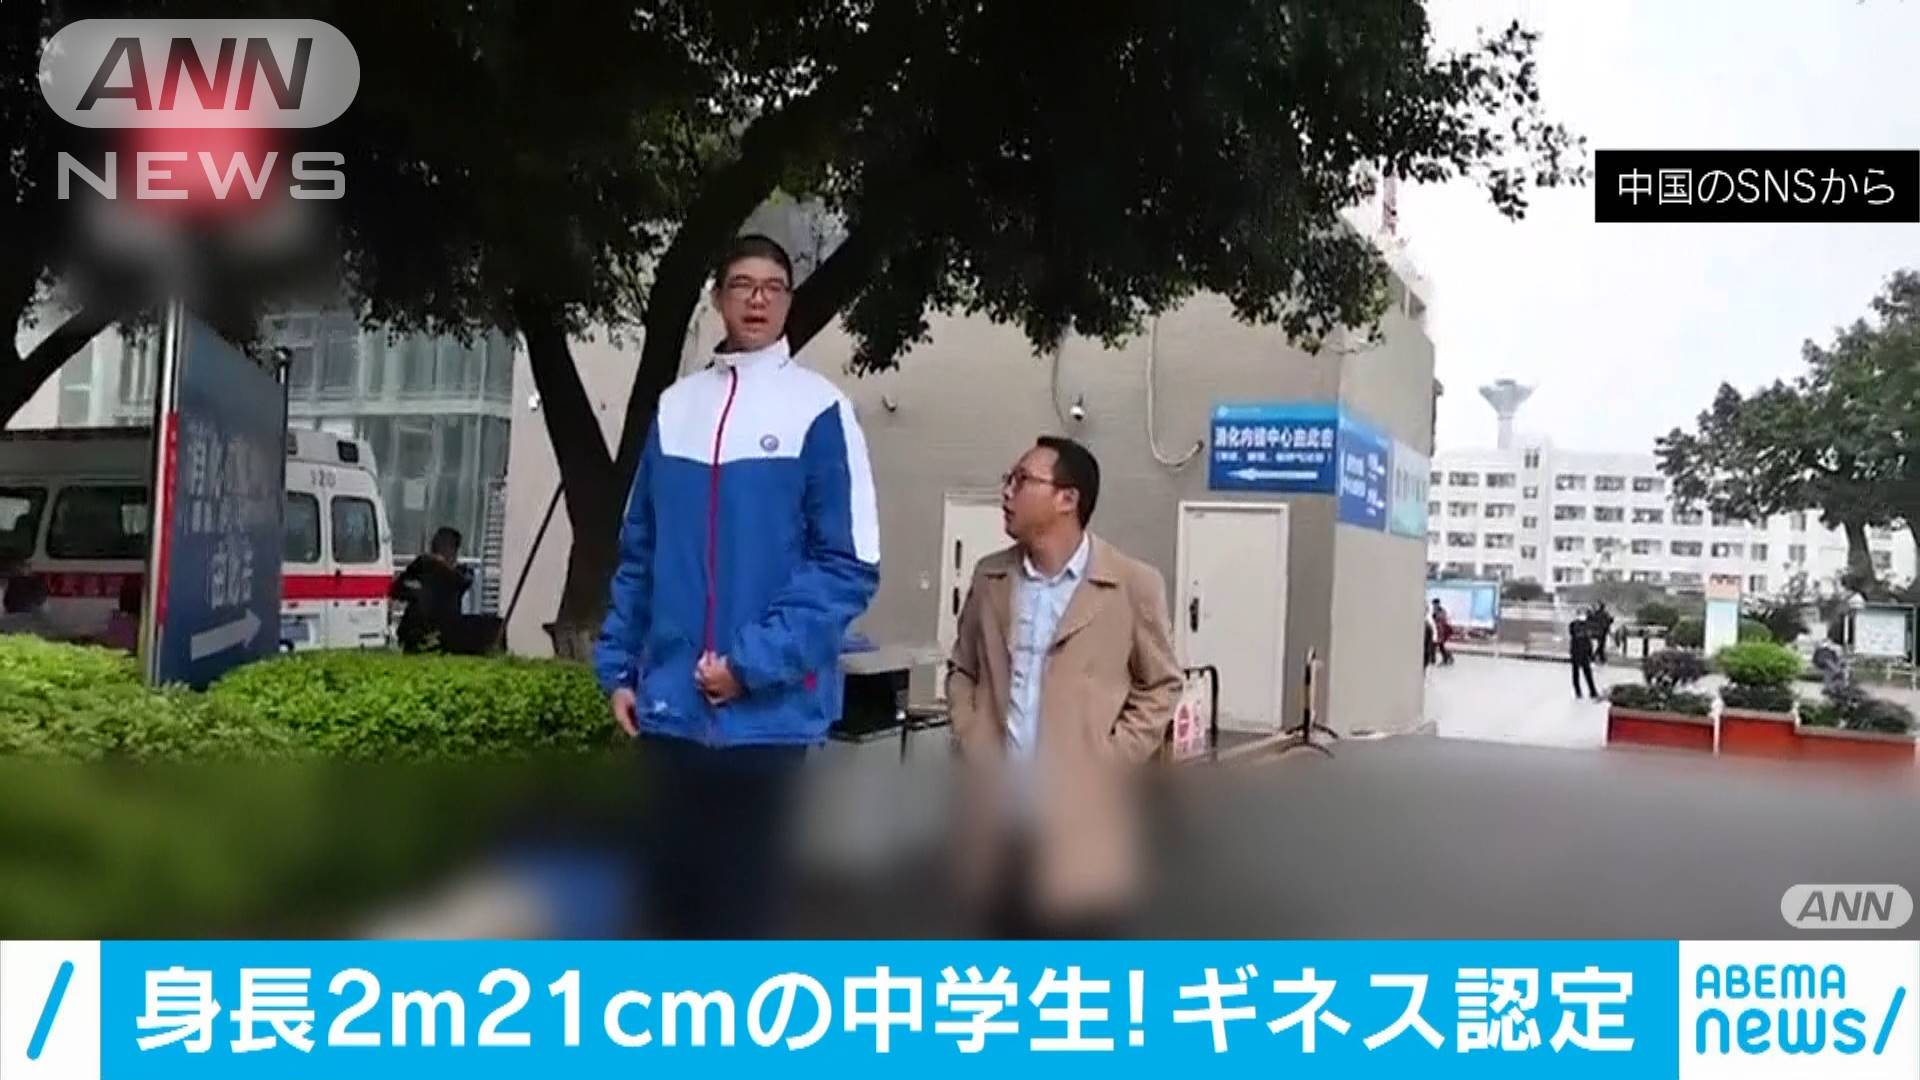 中国で身長2 21mの中学生 ギネス世界記録に認定 テレ朝news テレビ朝日のニュースサイト